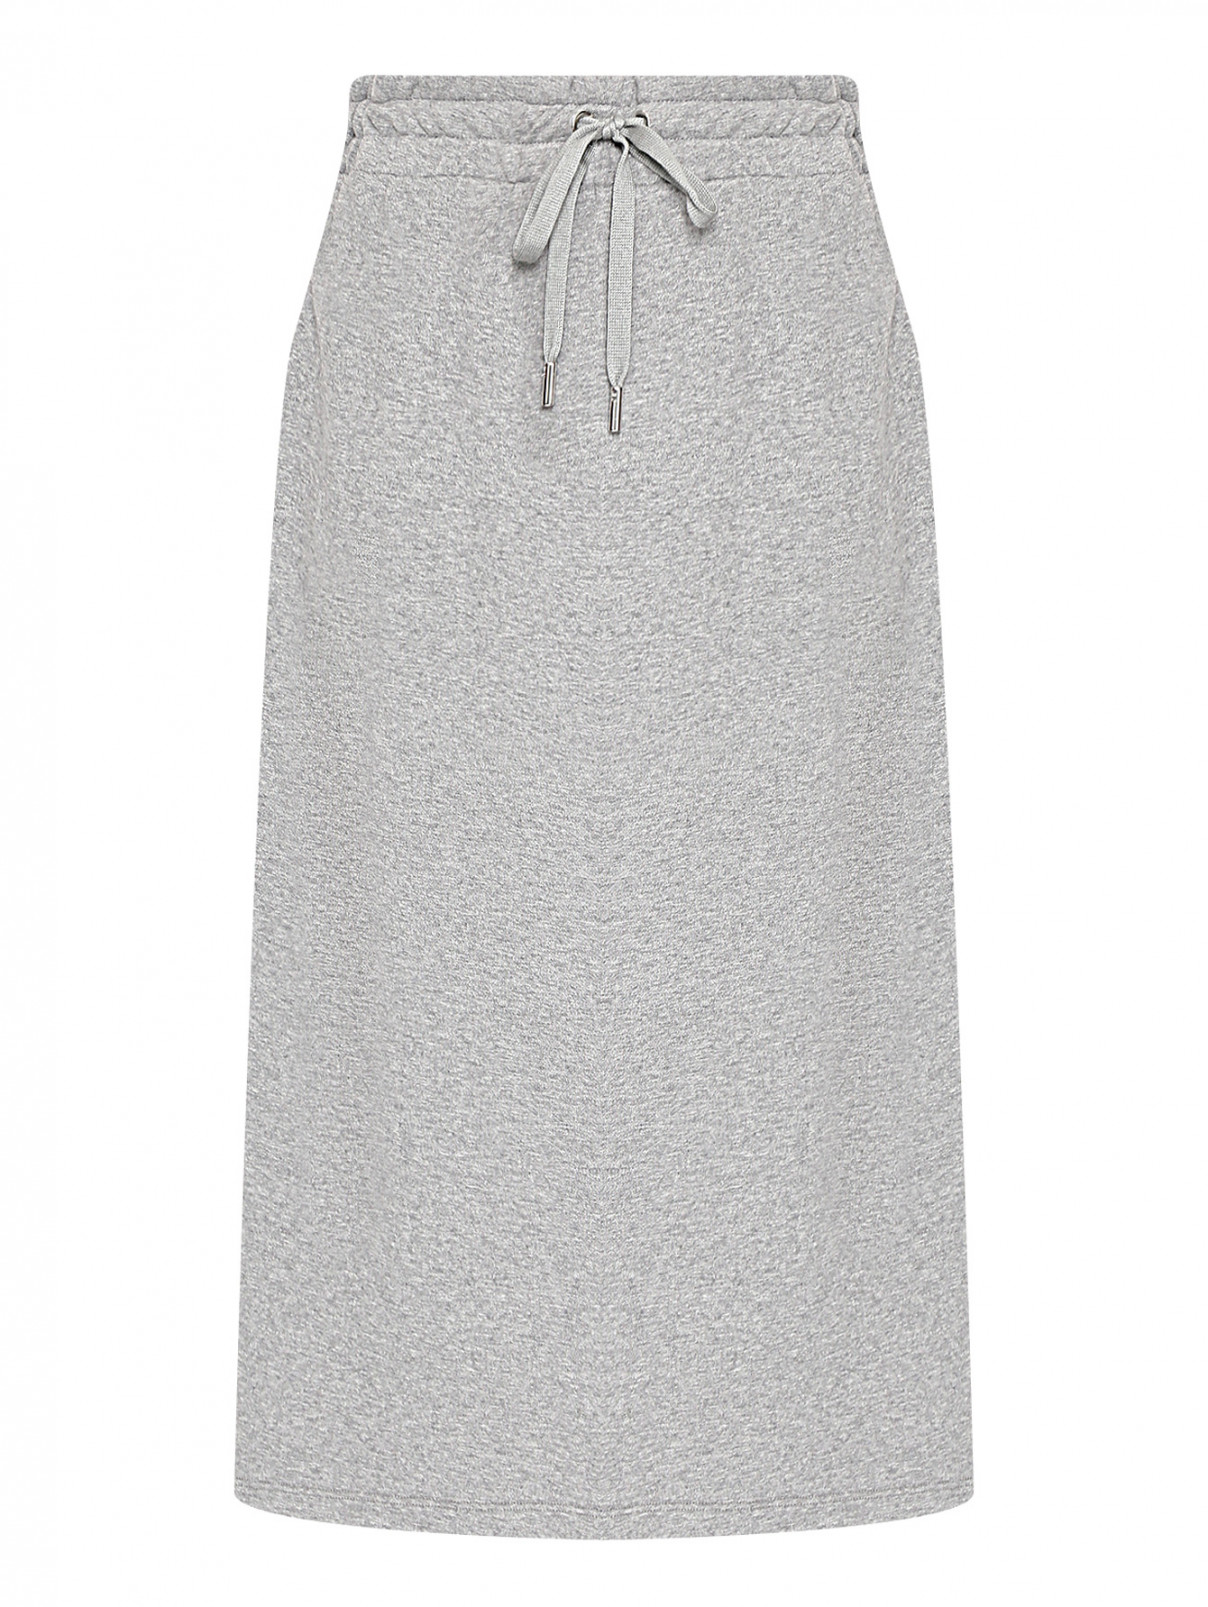 Трикотажная юбка на резинке Weekend Max Mara  –  Общий вид  – Цвет:  Серый